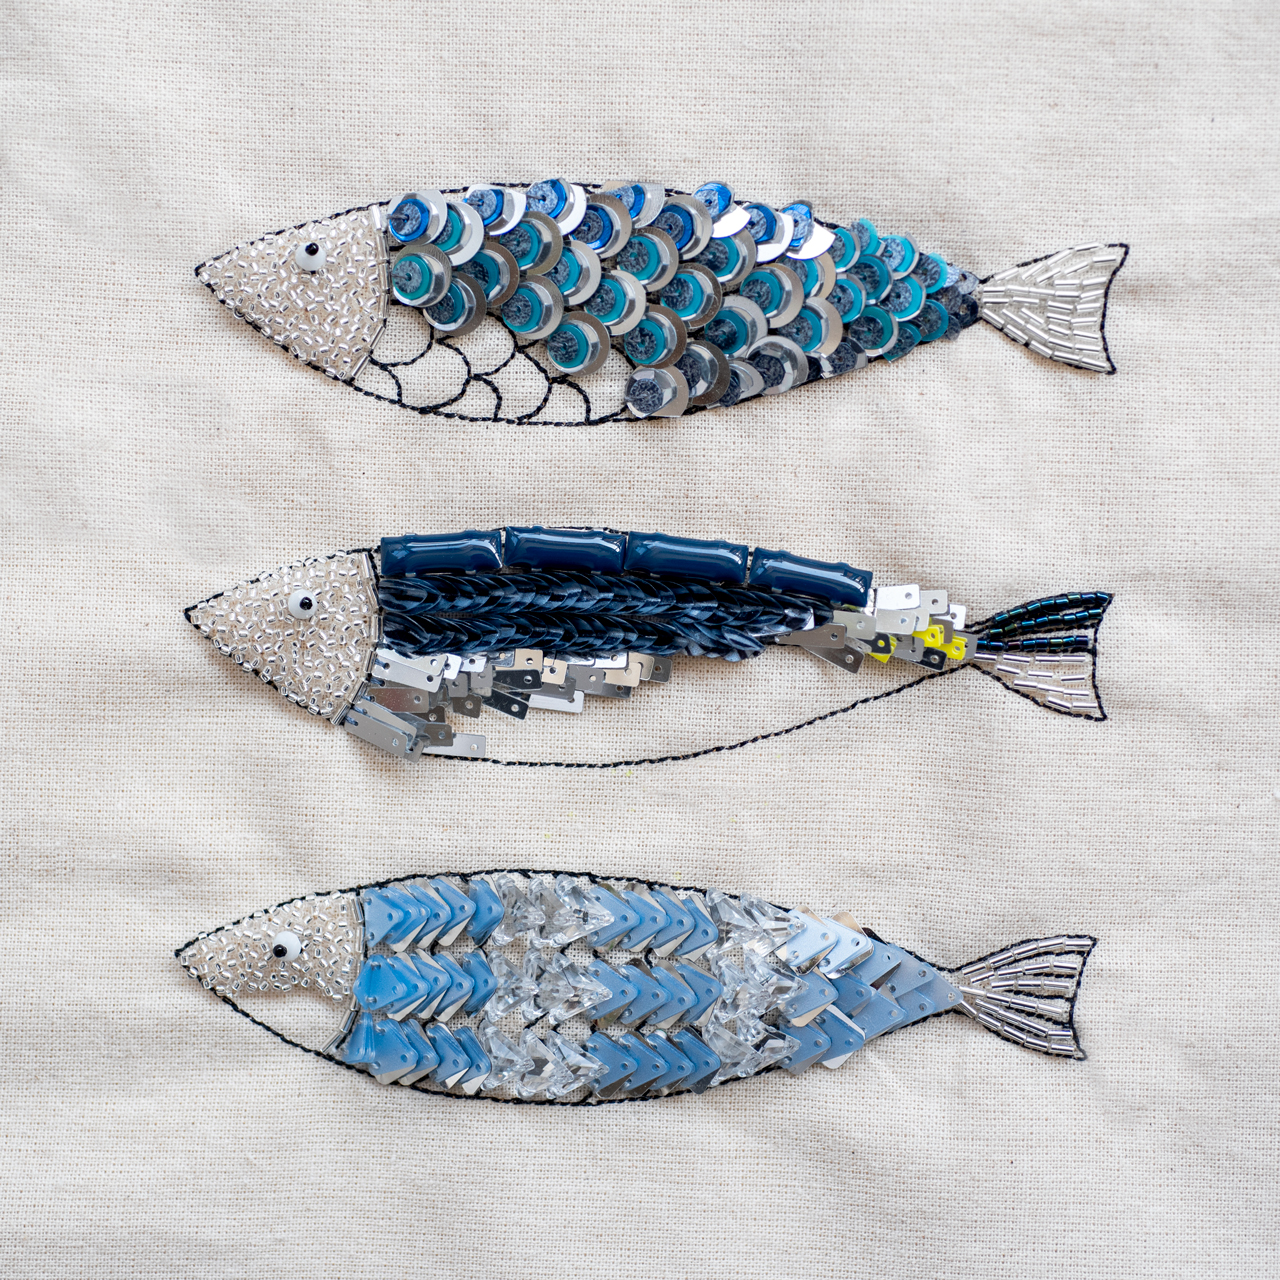 魚の刺繍のサンプル